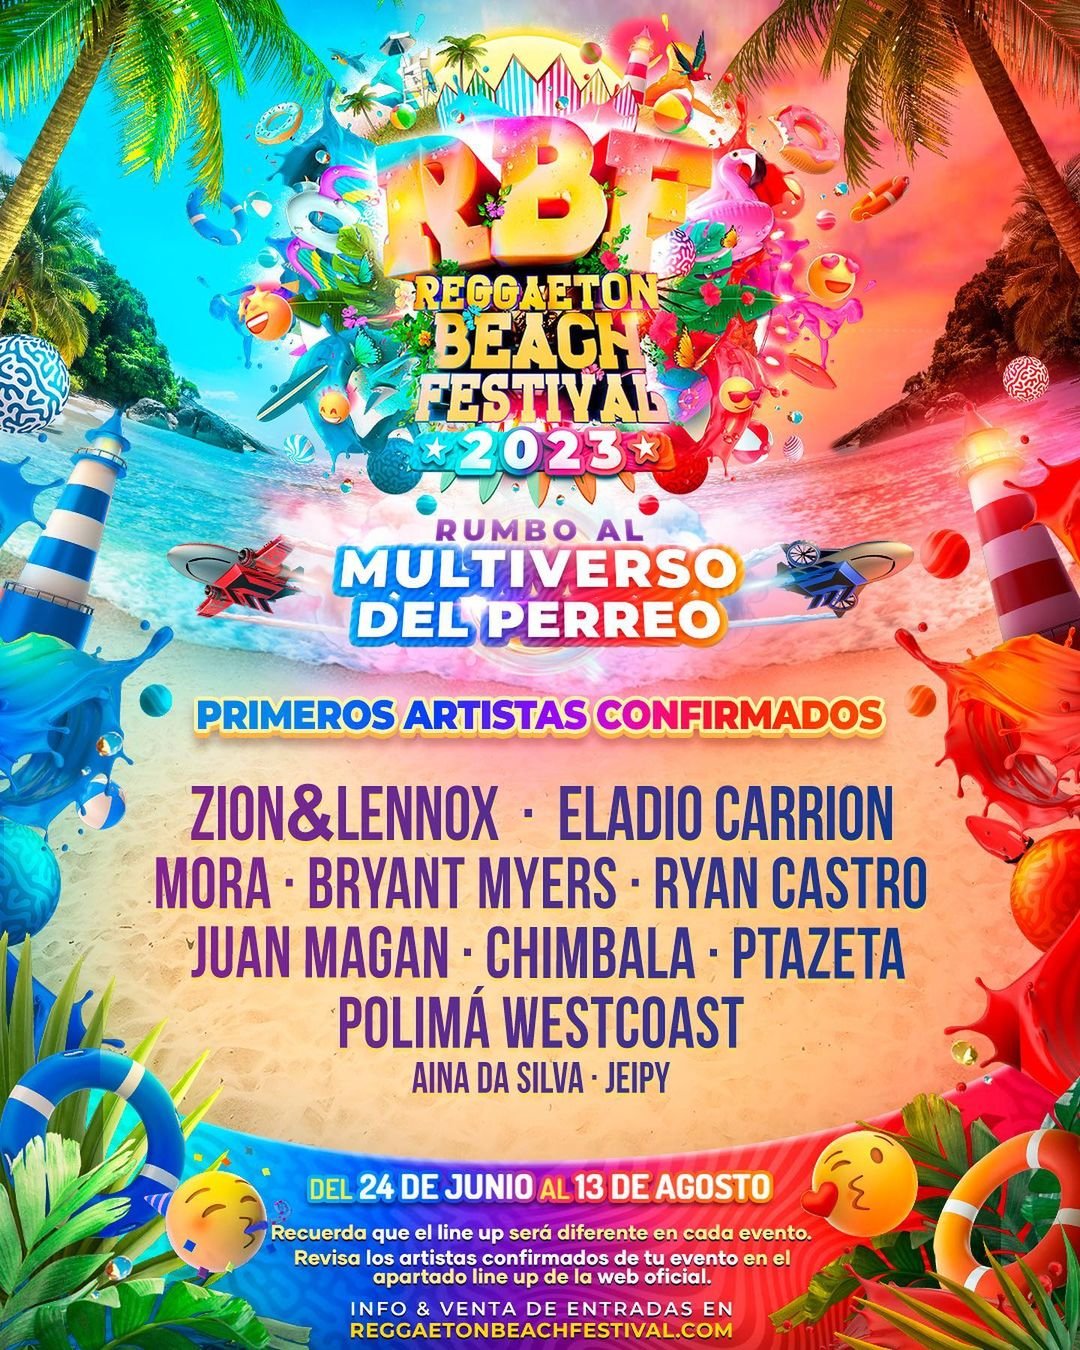 Reggaeton Beach Festival (Barcelona) 2023 Cartel, entradas, horarios